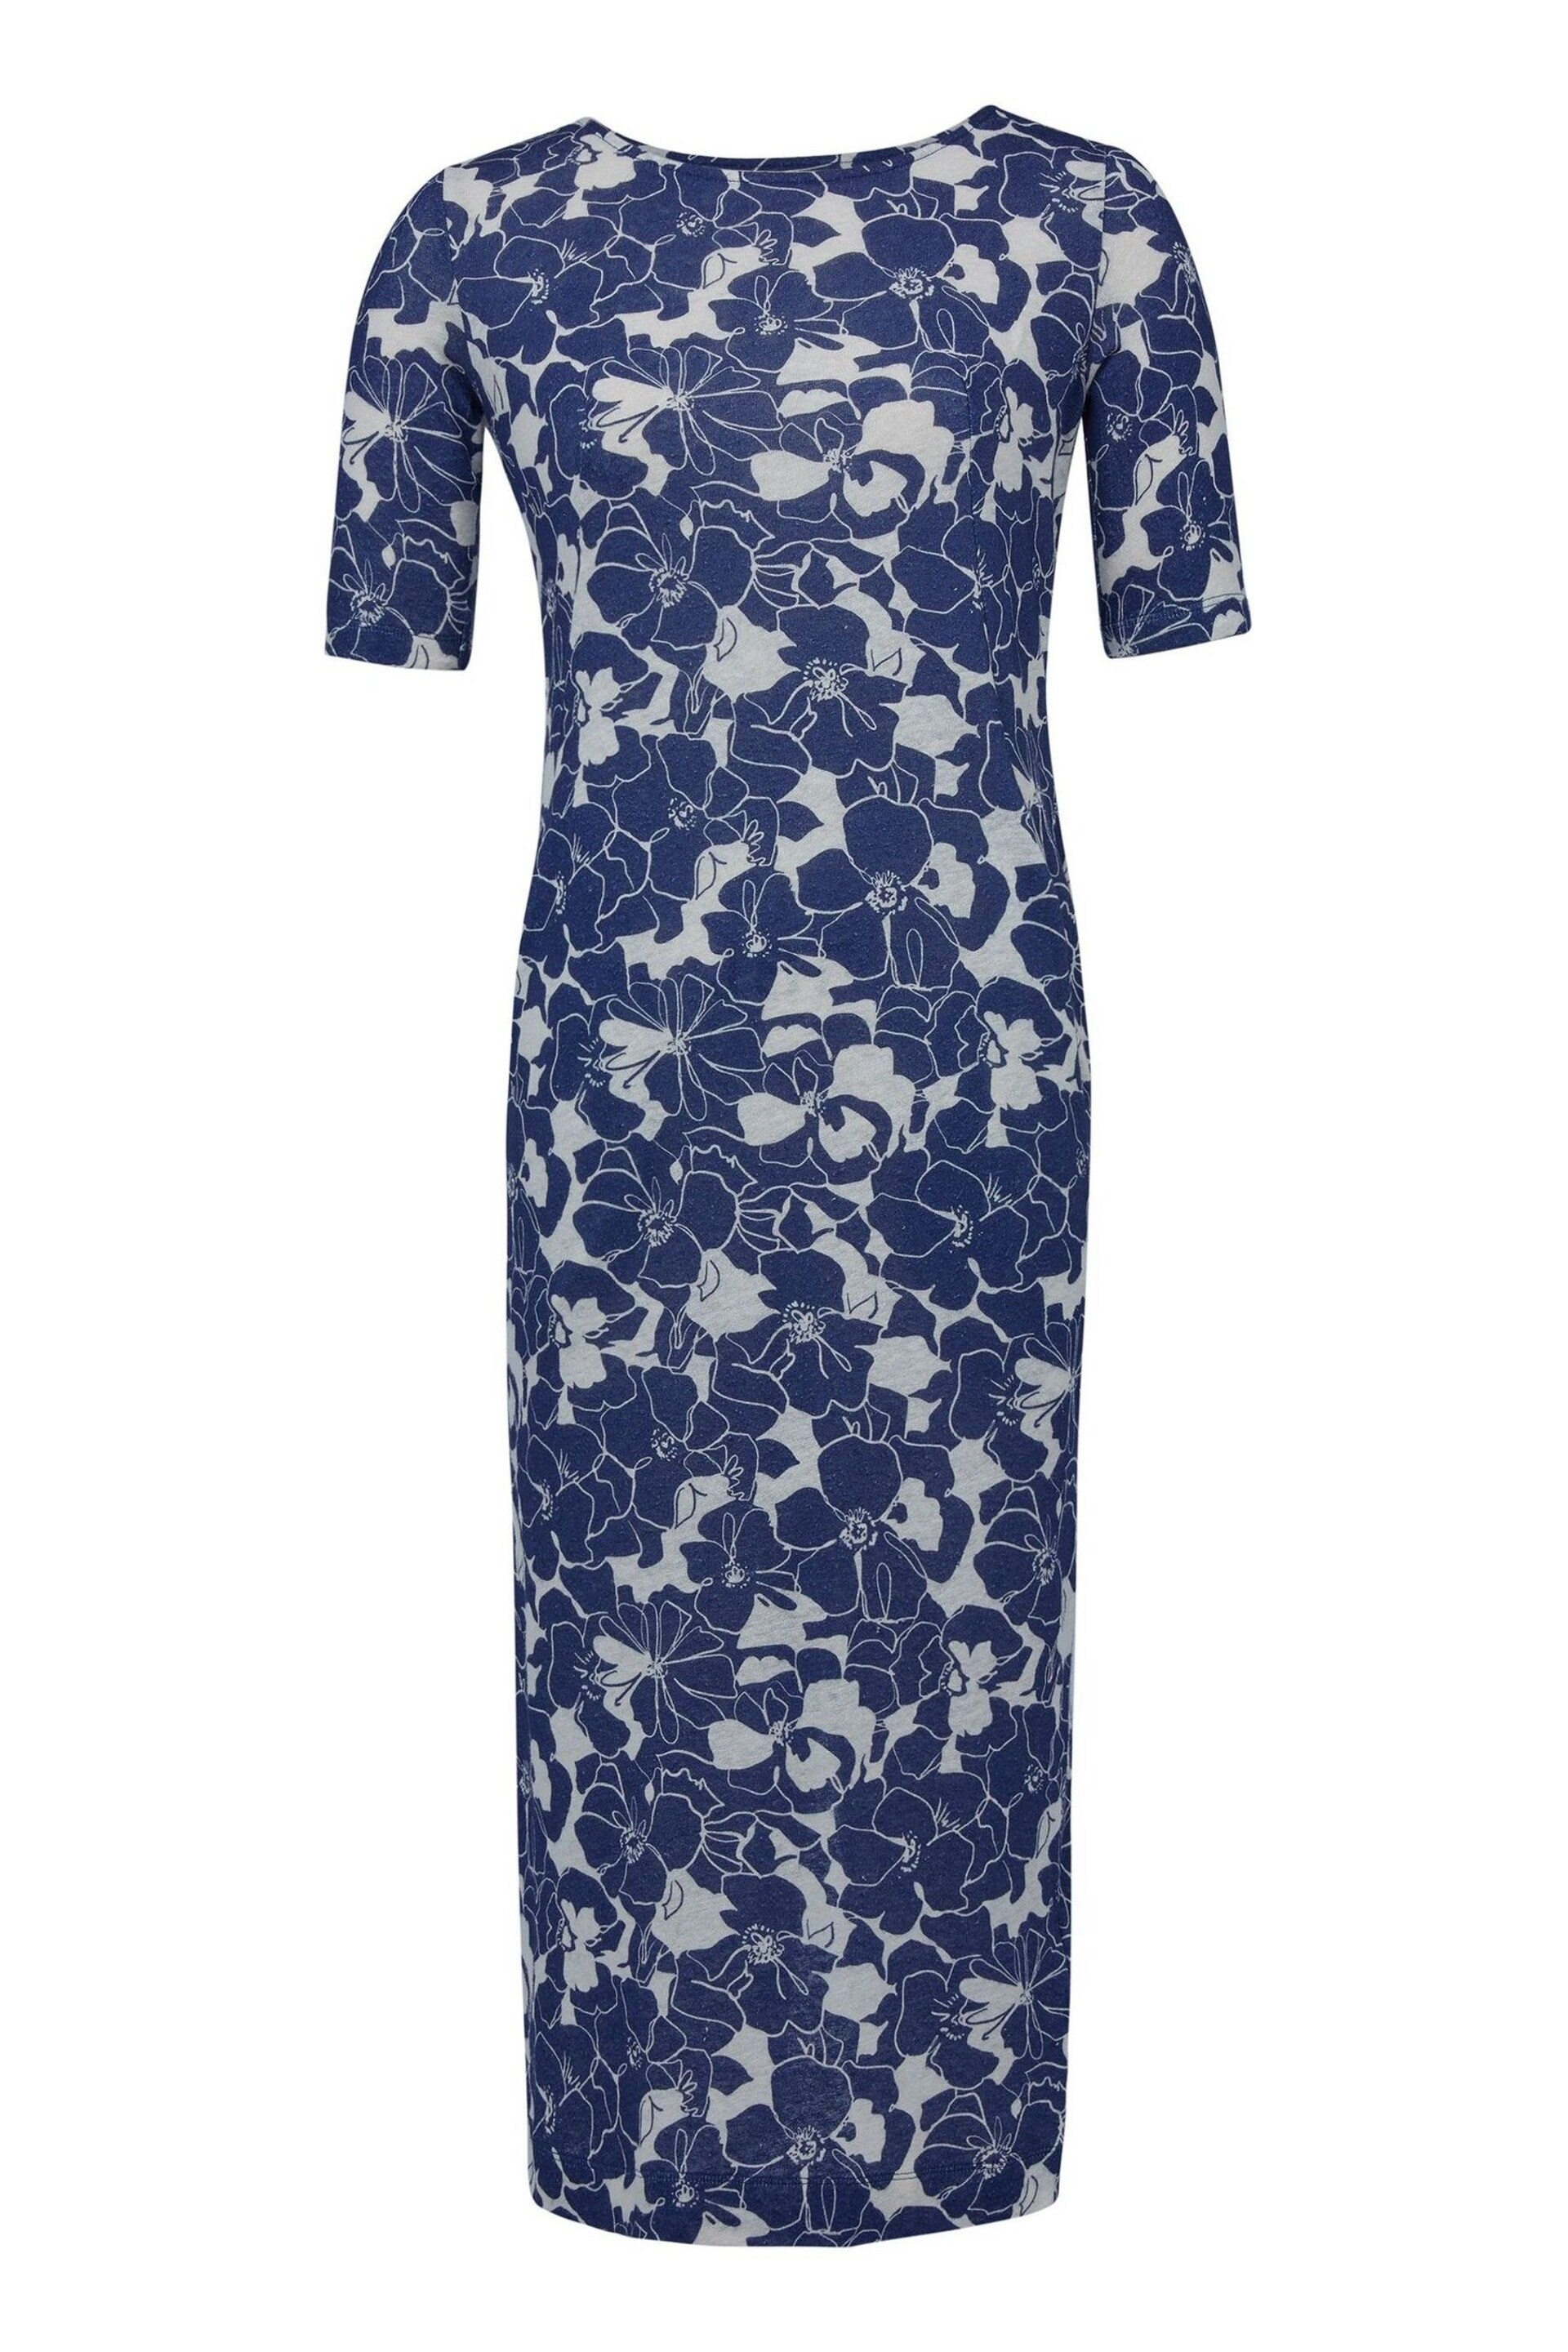 Celtic & Co. Blue Linen / Cotton Button Back Dress - Image 4 of 6